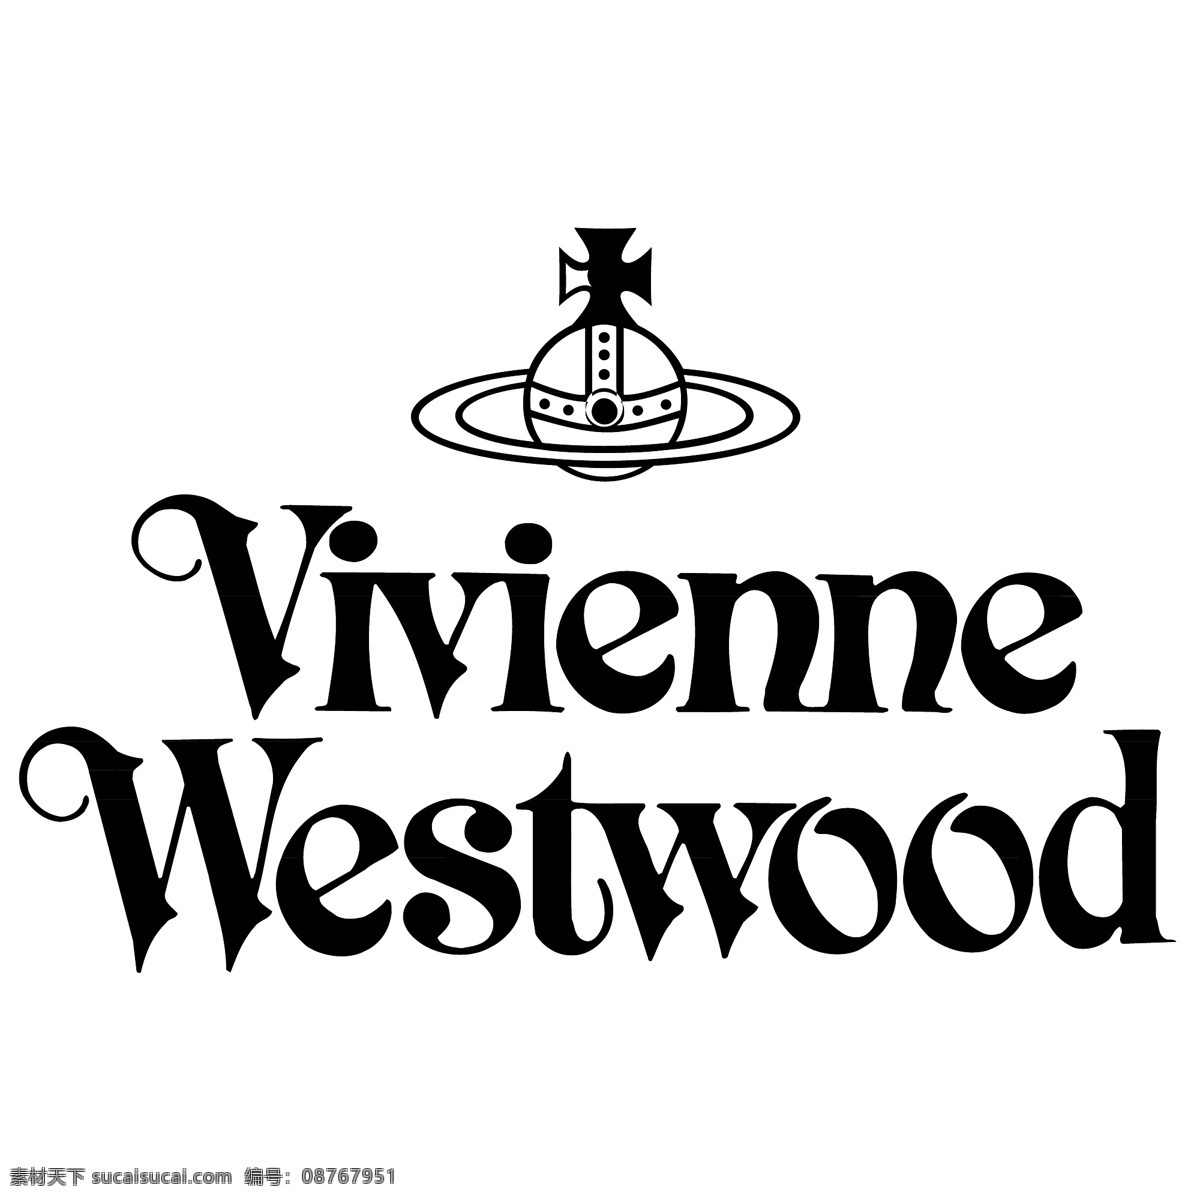 薇 恩 韦斯特 伍德 矢量标志下载 免费矢量标识 商标 品牌标识 标识 矢量 免费 品牌 公司 白色